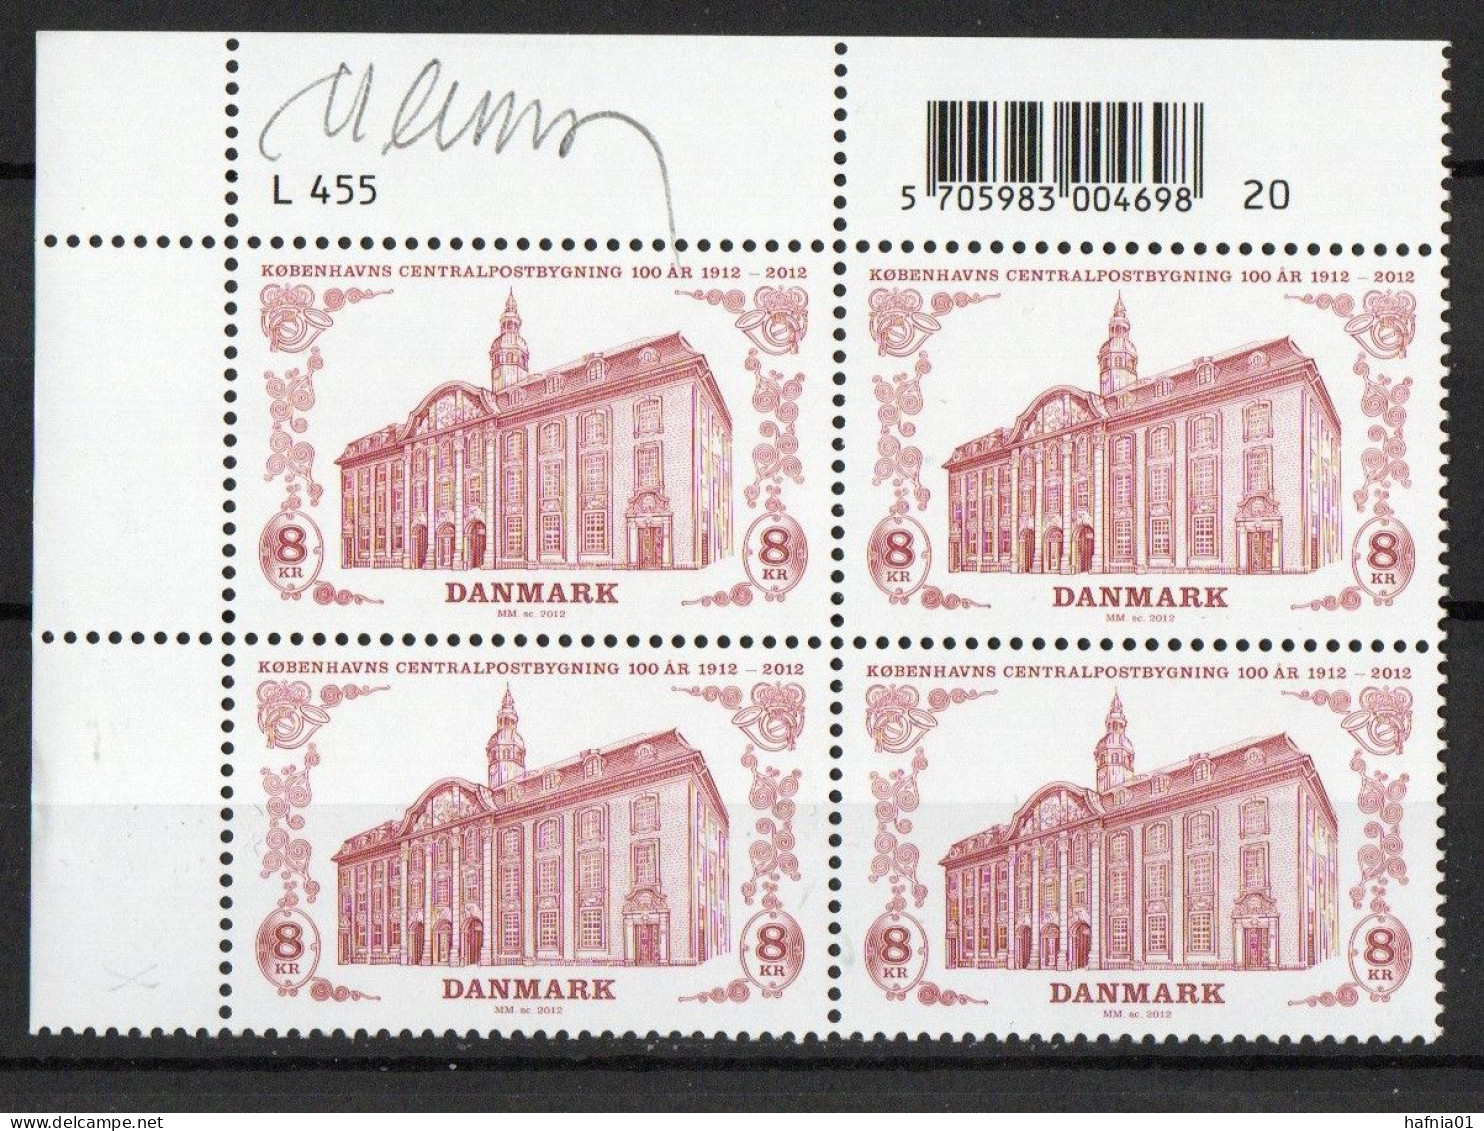 Martin Mörck. Denmark 2012. Main Post Office, Copenhagen. Michel 1718 Plate Block. MNH. Signed. - Blocs-feuillets